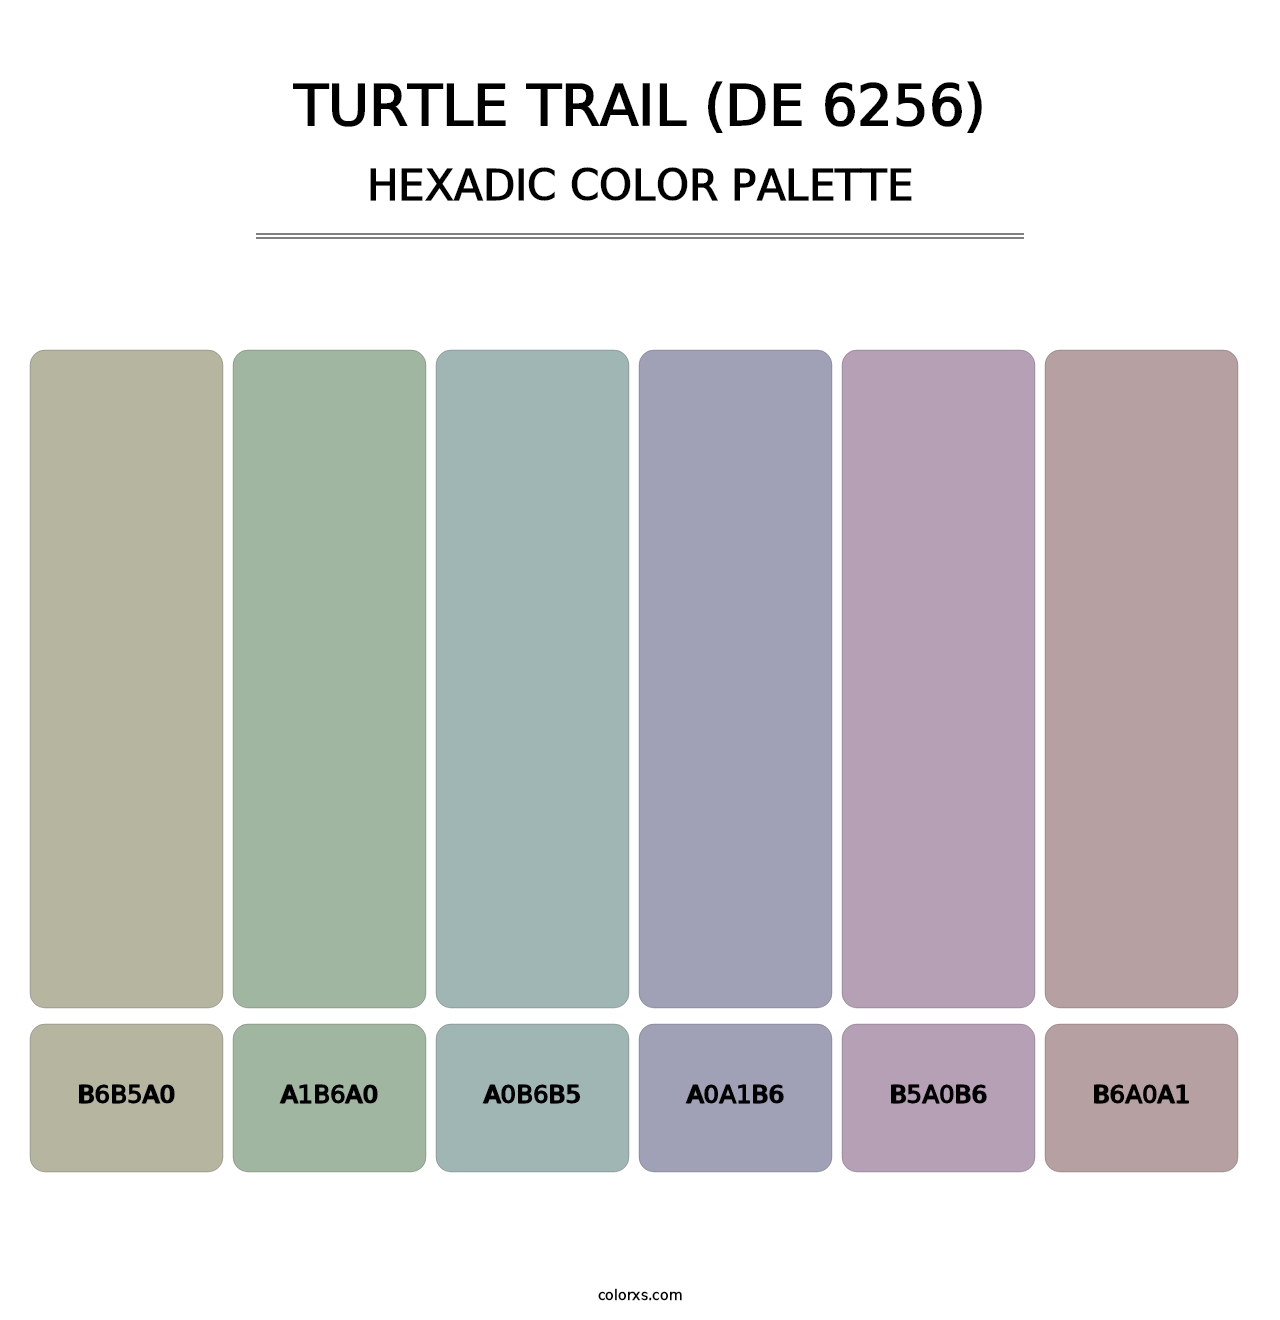 Turtle Trail (DE 6256) - Hexadic Color Palette